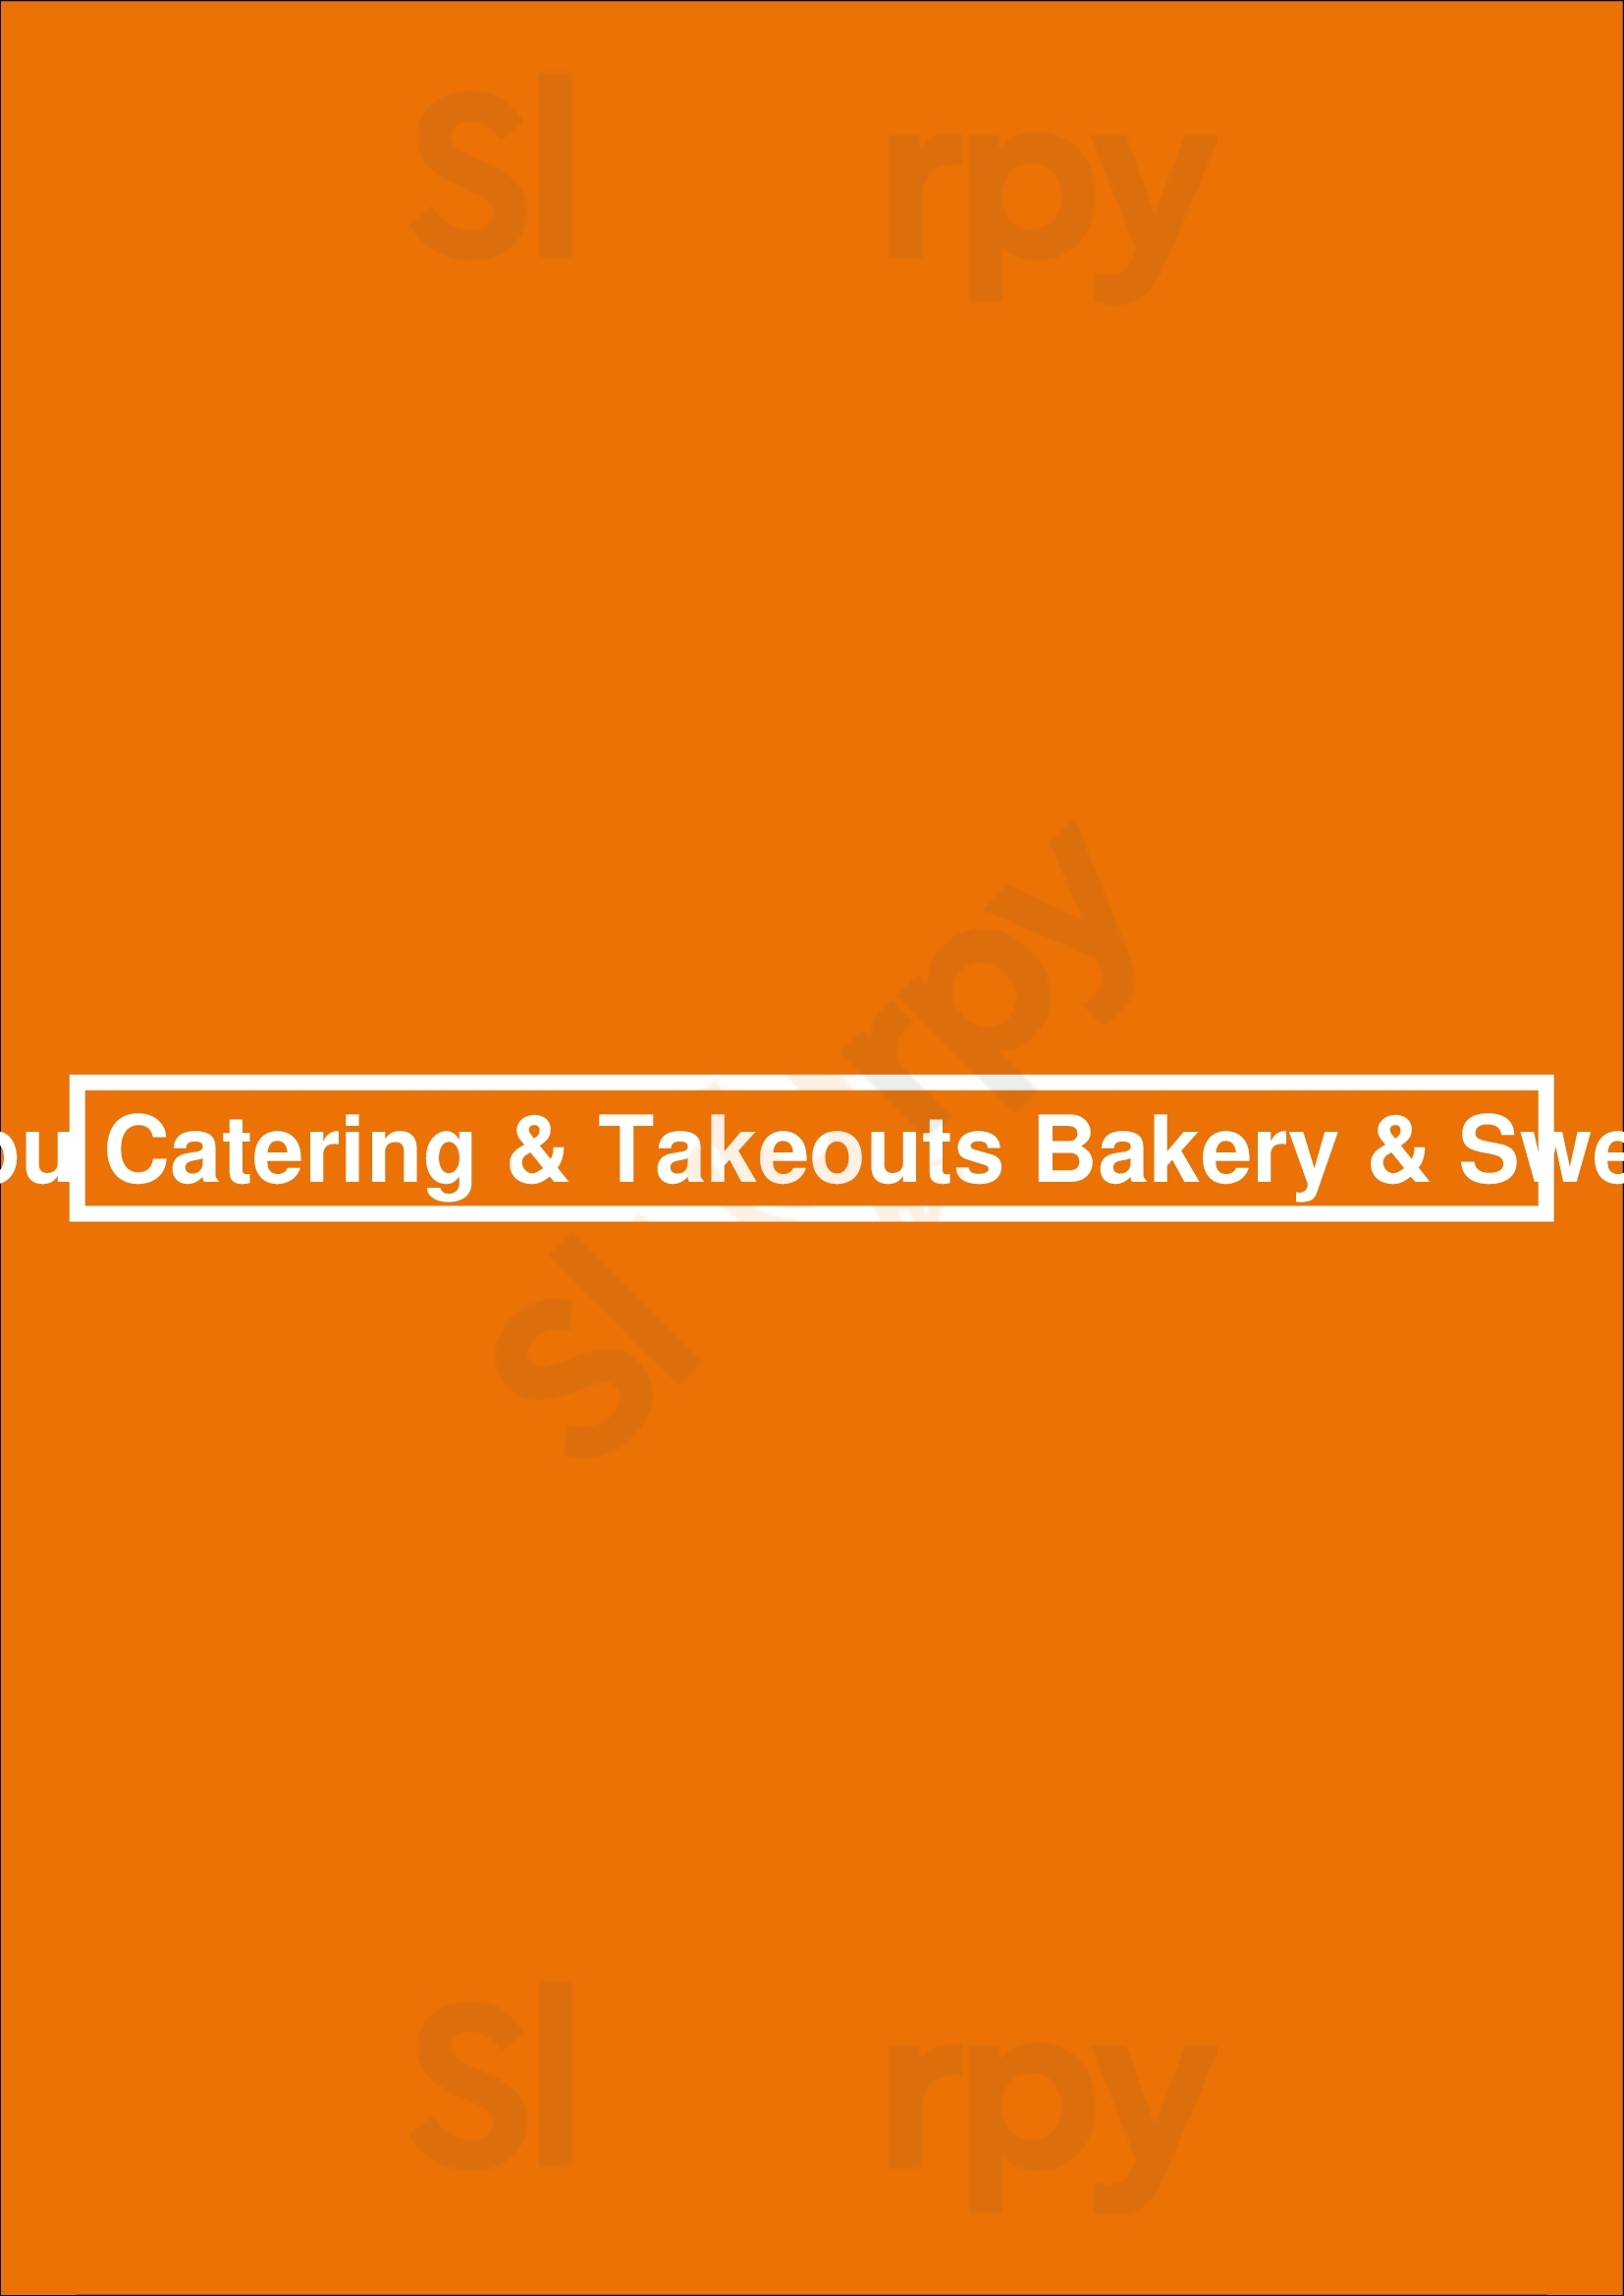 Babu Catering & Takeouts Bakery & Sweets Markham Menu - 1